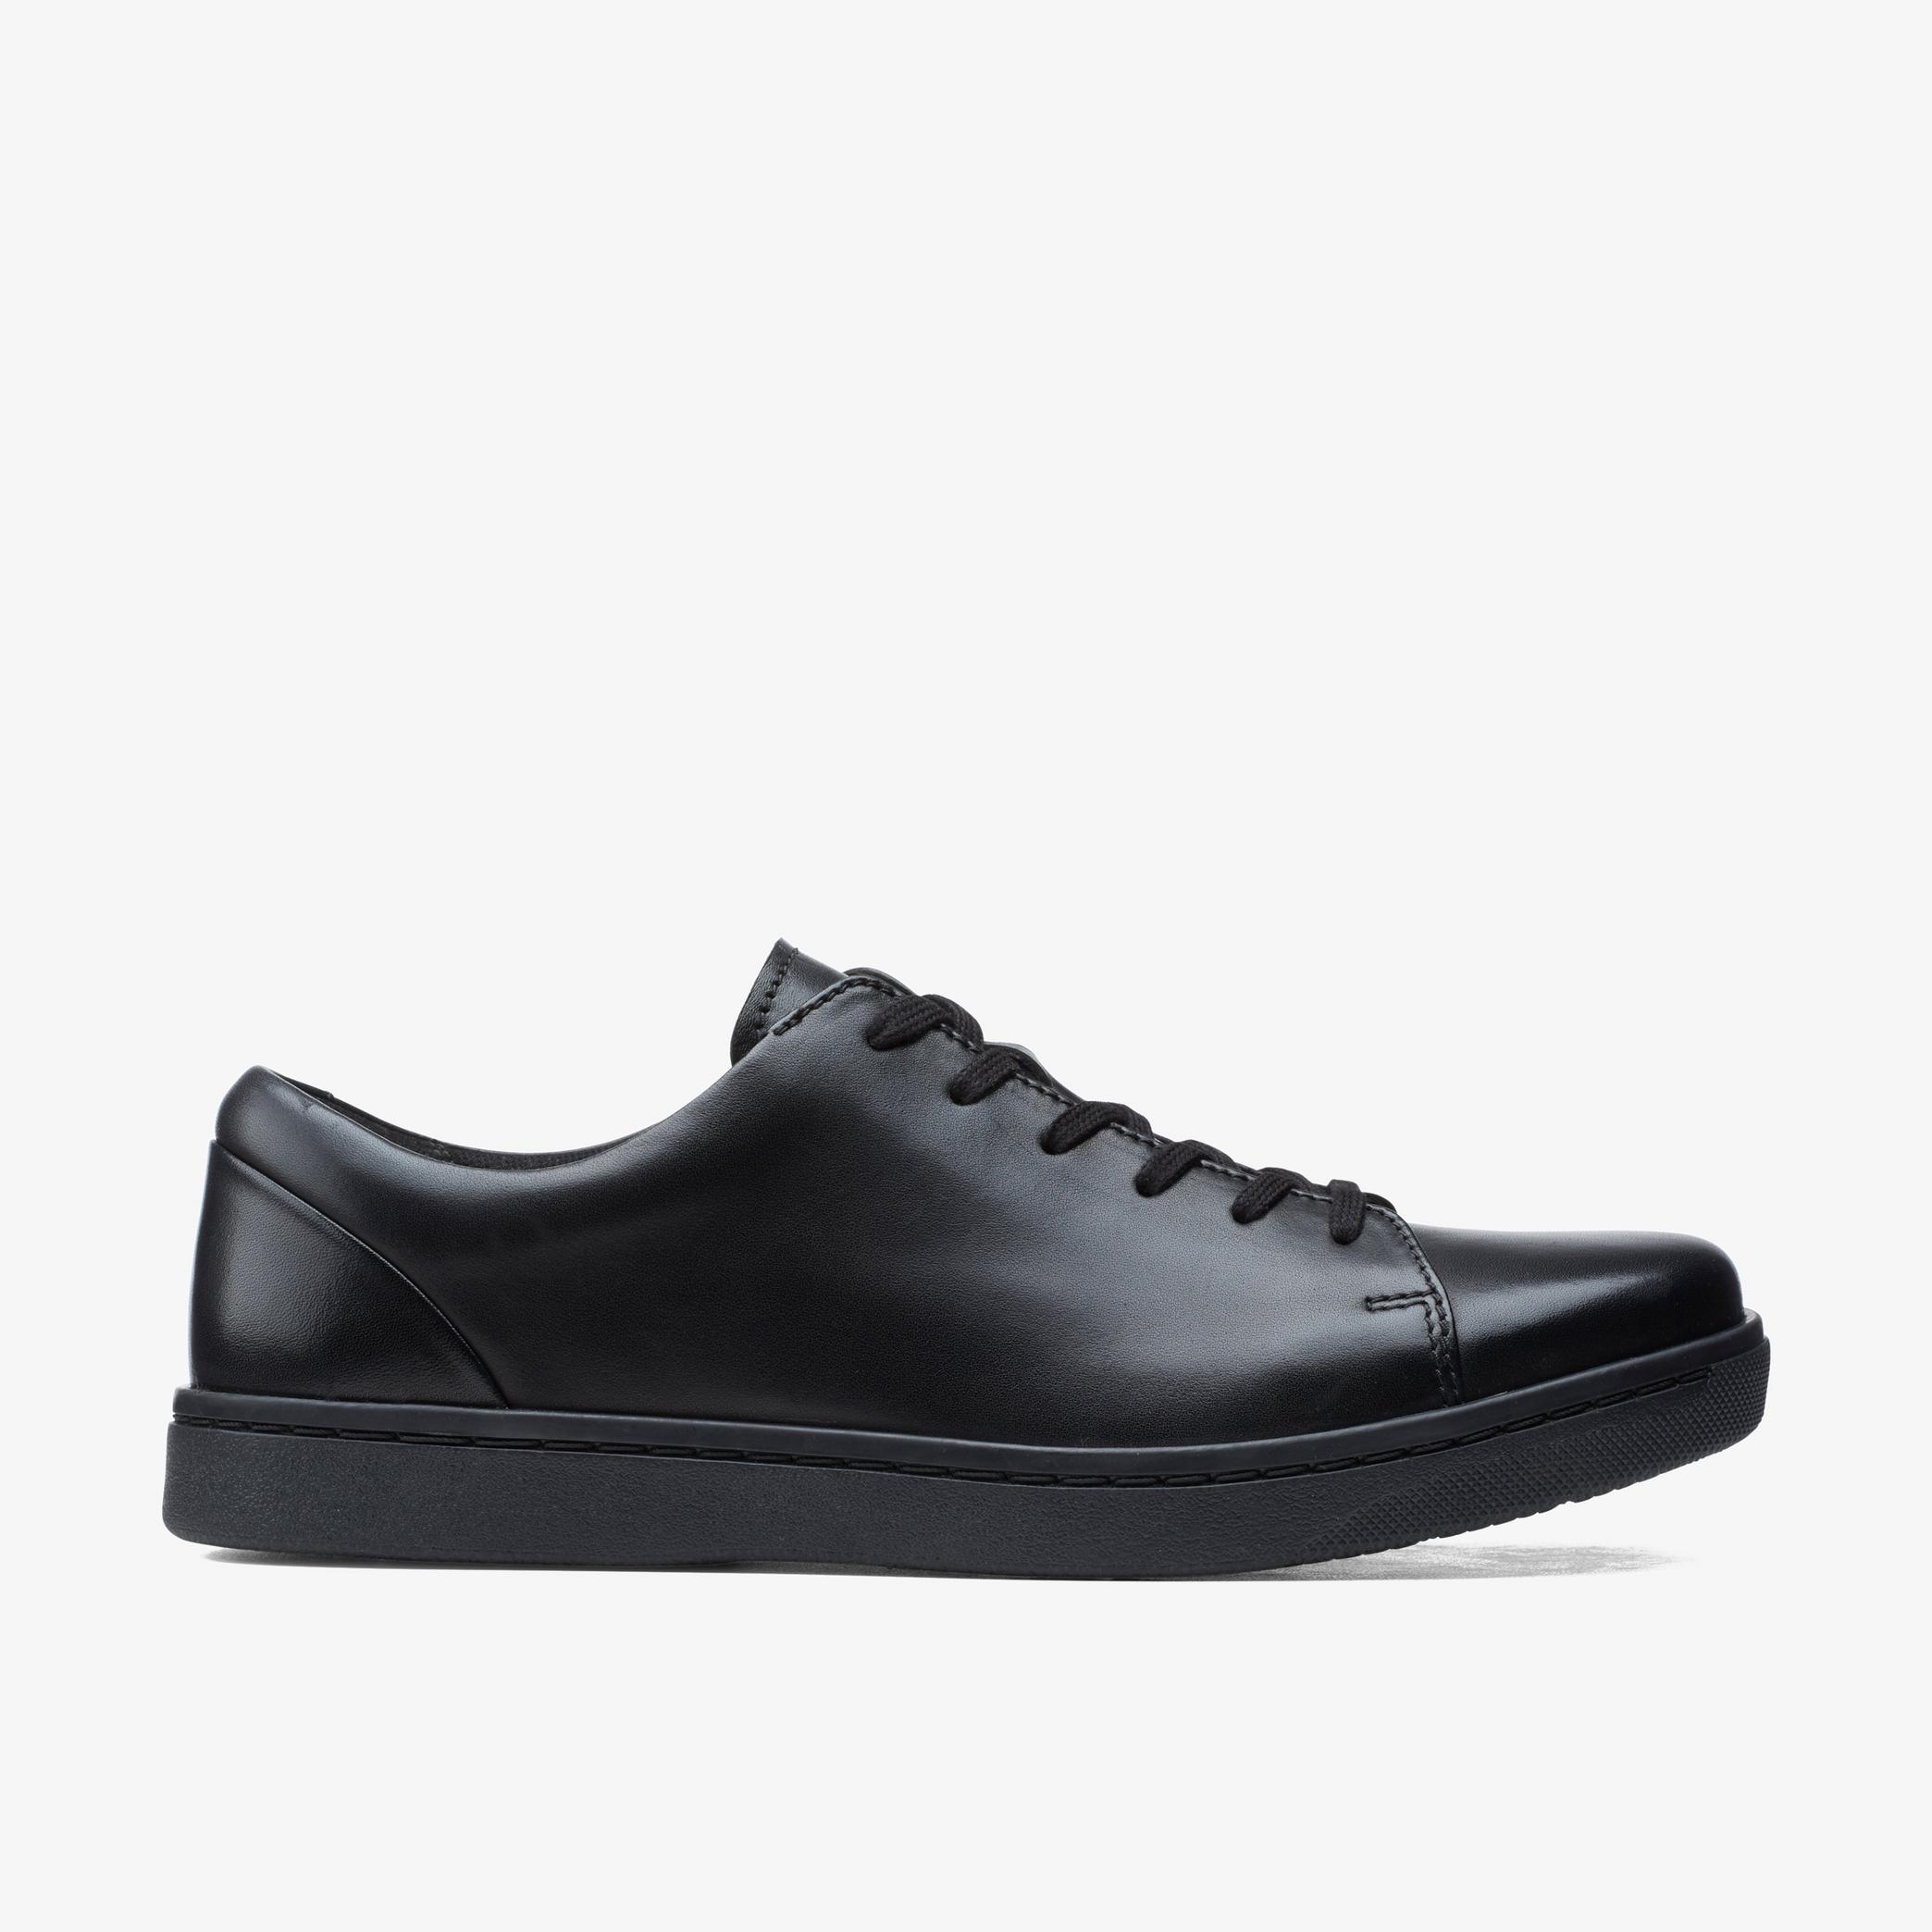 MENS Kitna Lo Black Leather Shoes | Clarks Outlet